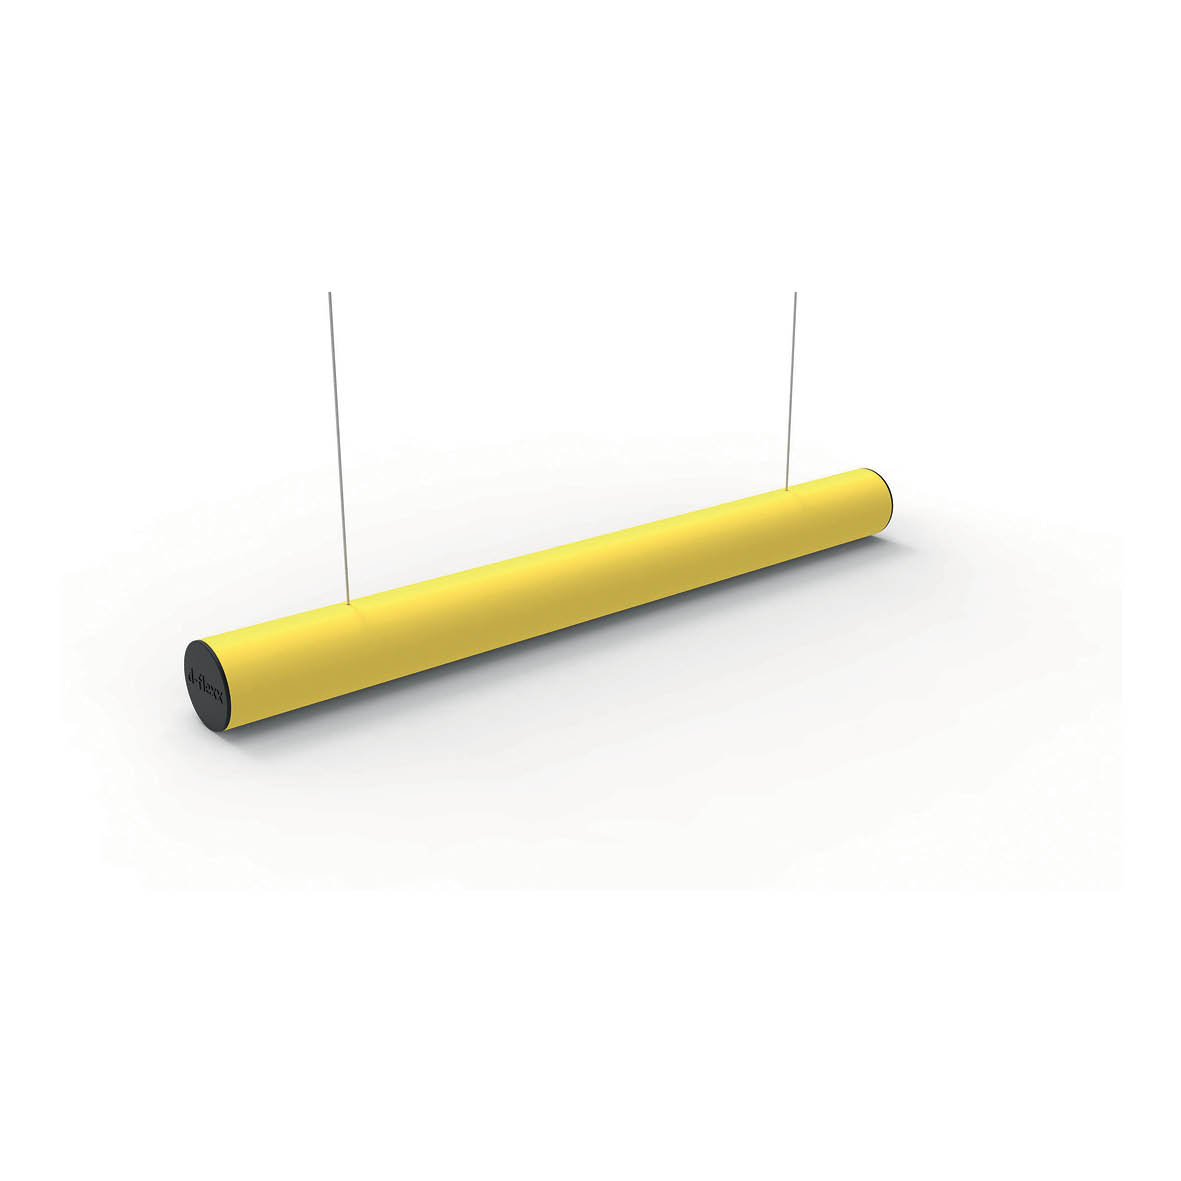 Höchsthöhenbalken rund, gelber schlagfester Kunststoff, L = 1.0 m, inkl. 2 x 2.2 m Stahlseil, 4.5 kg